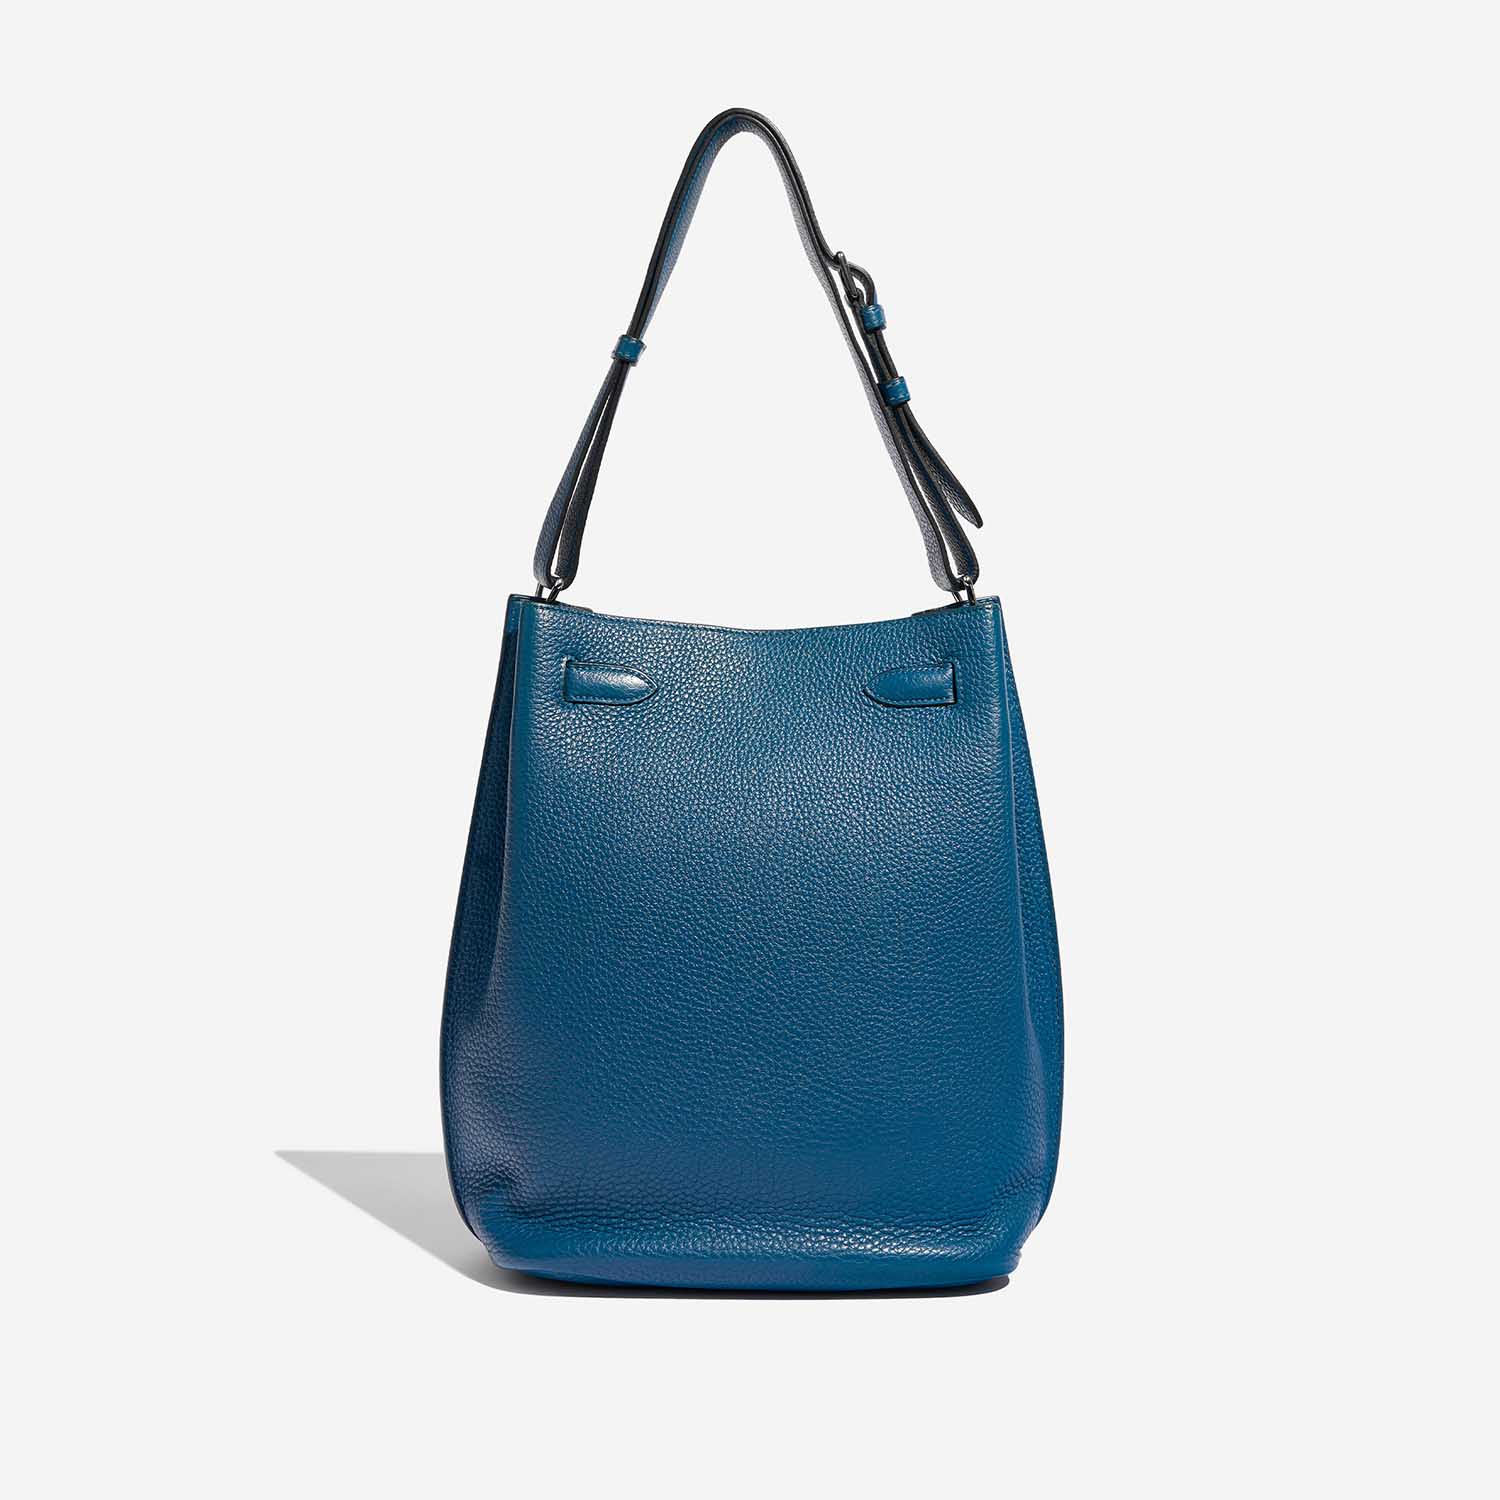 Pre-owned Hermès Tasche So Kelly 26 Togo Cobalt Blue Back | Verkaufen Sie Ihre Designer-Tasche auf Saclab.com